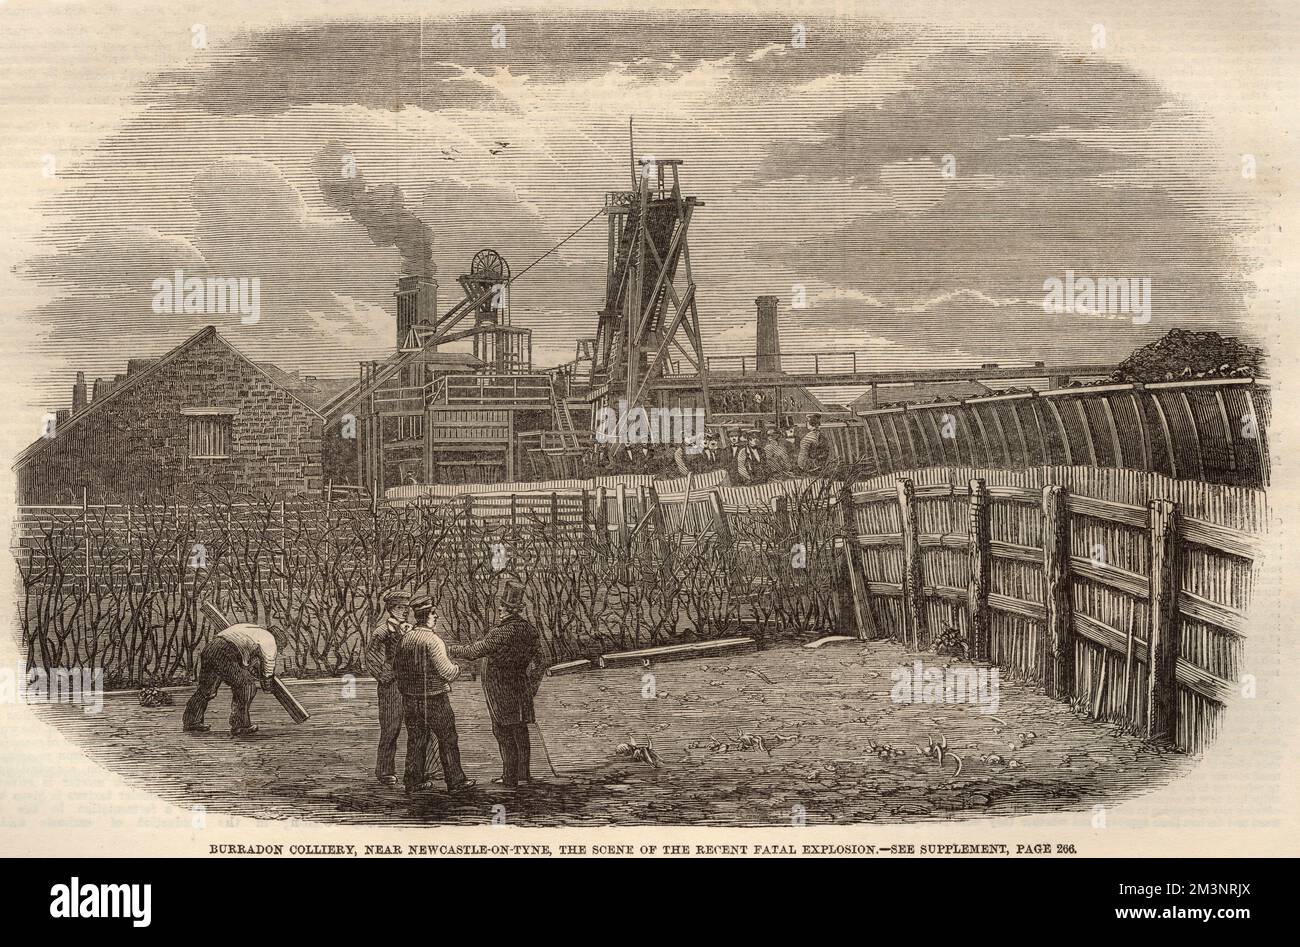 Burradon Colliery, nahe Newcastle : die Mündung der Grube kurz nach der tödlichen Explosion, bei der 76 Männer und Jungen ums Leben kamen. Datum: 2.. März 1860 Stockfoto